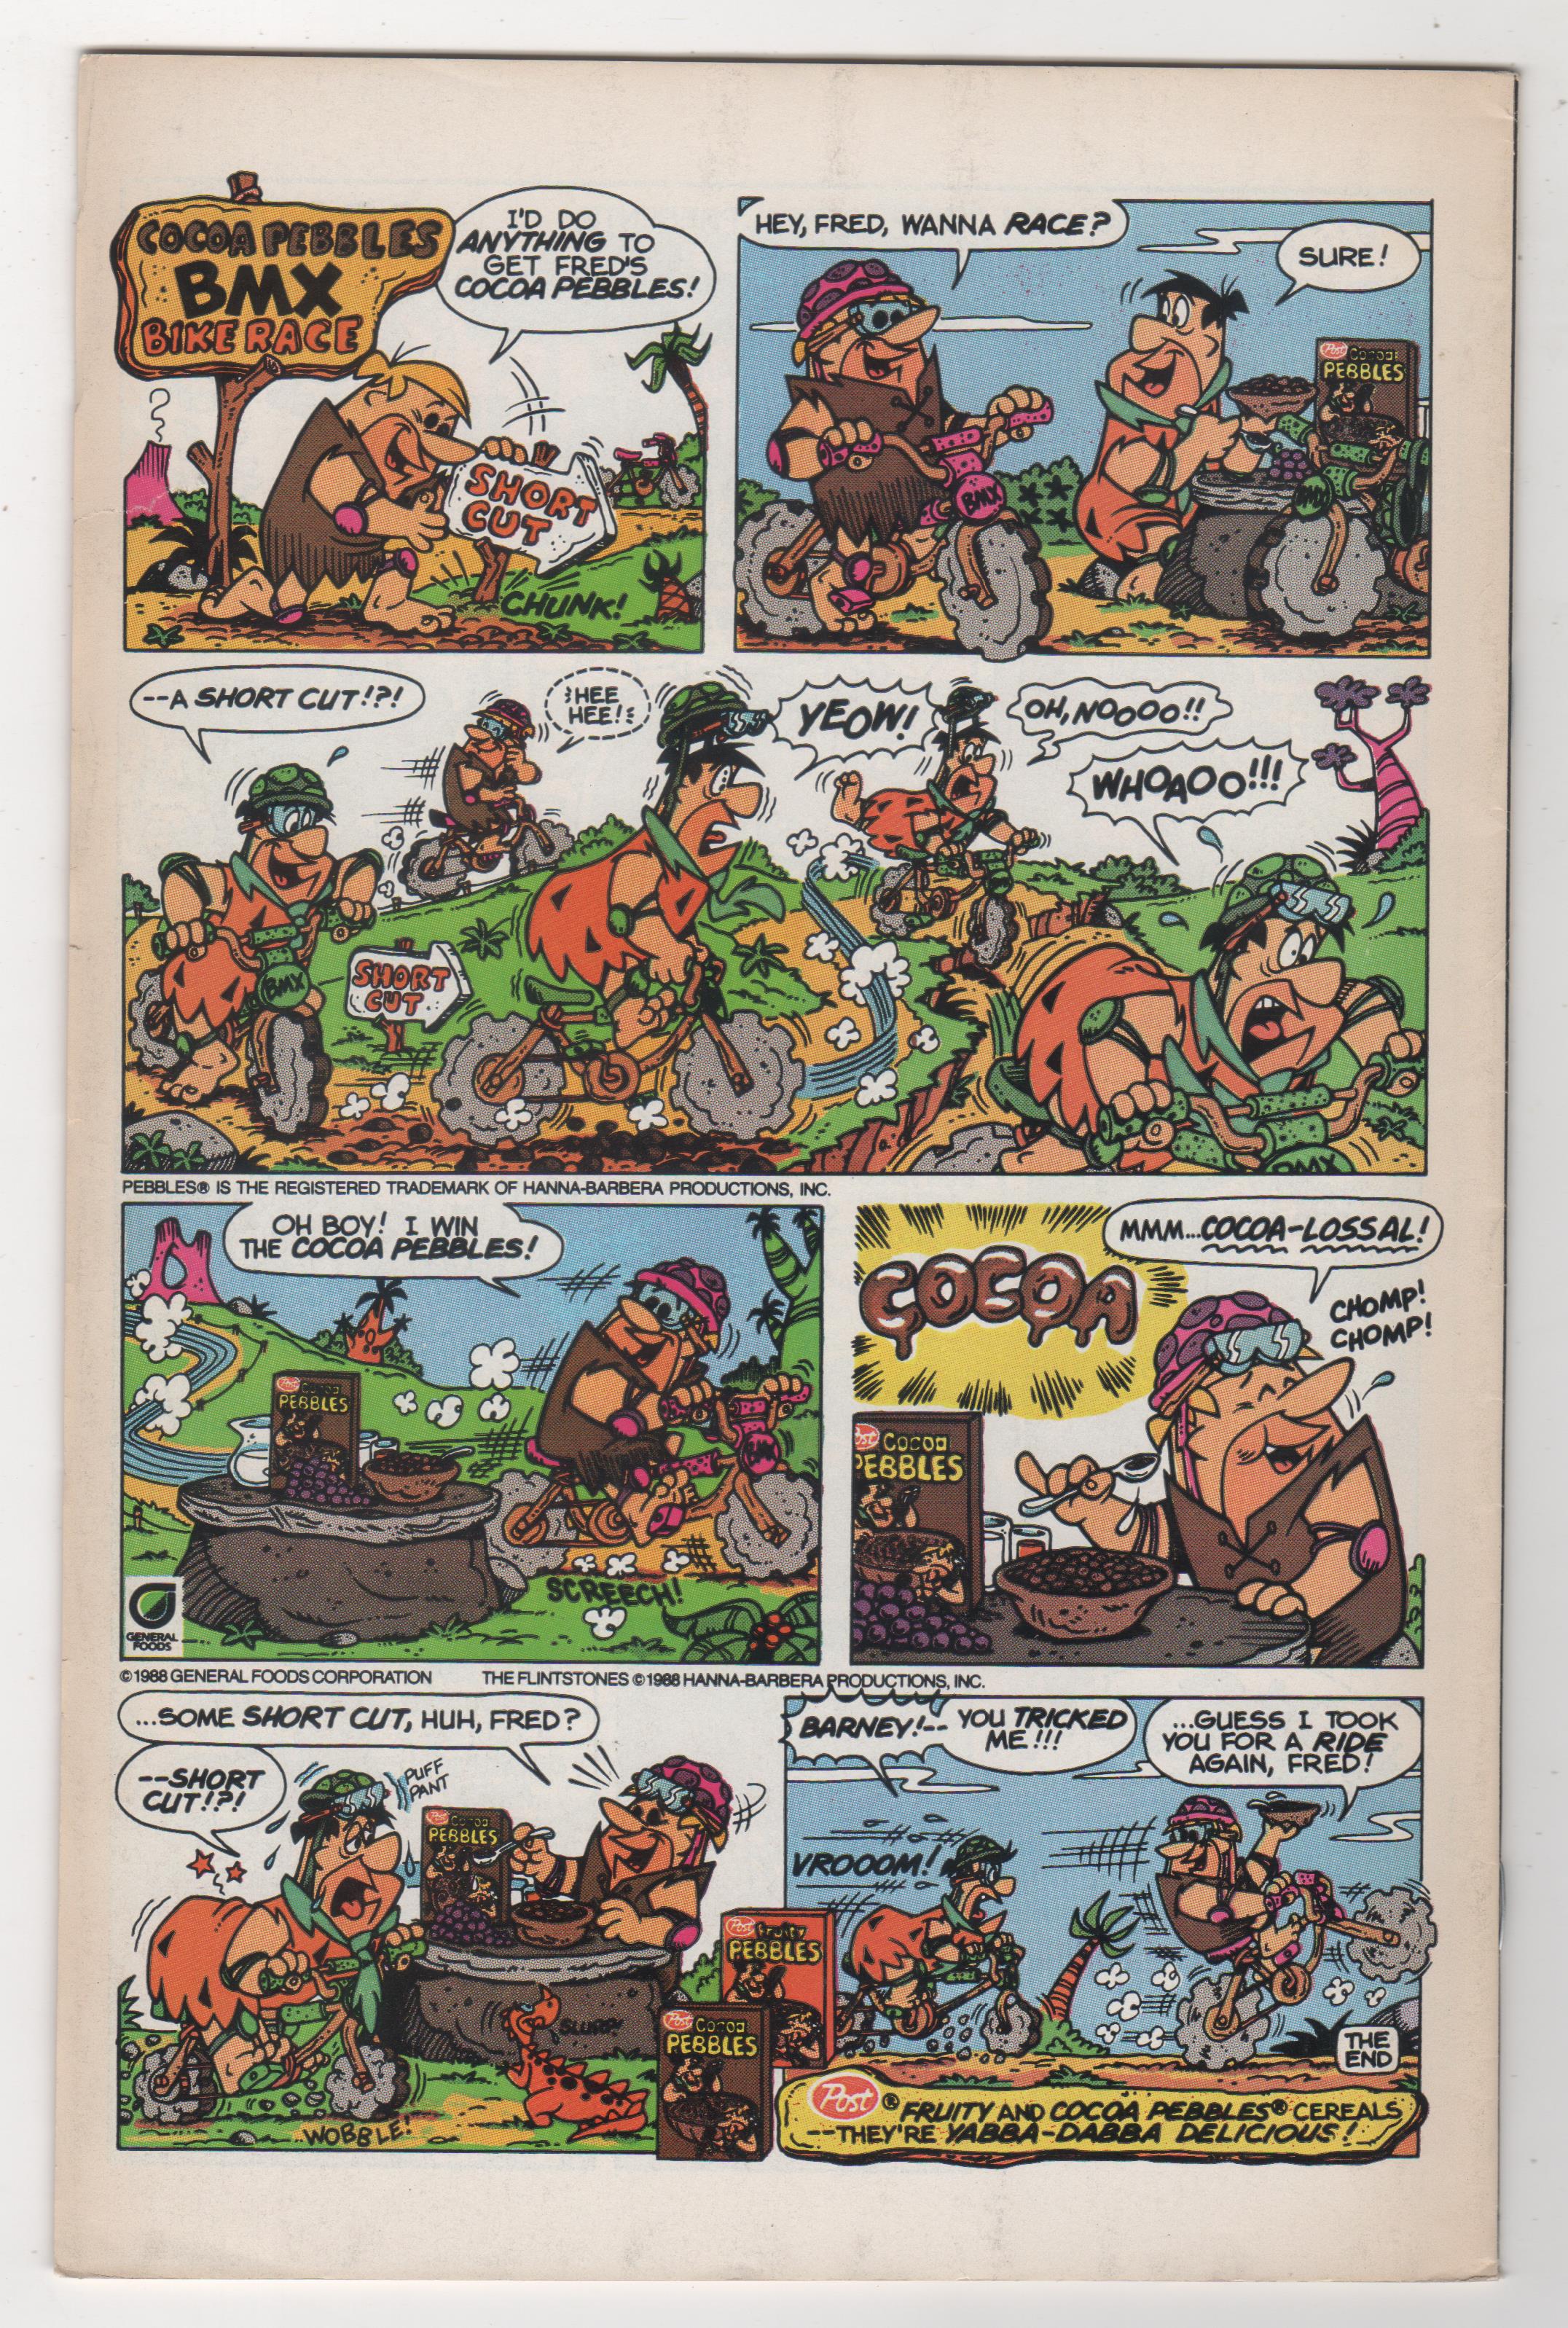 Archie 3000 #1 Comics 1989